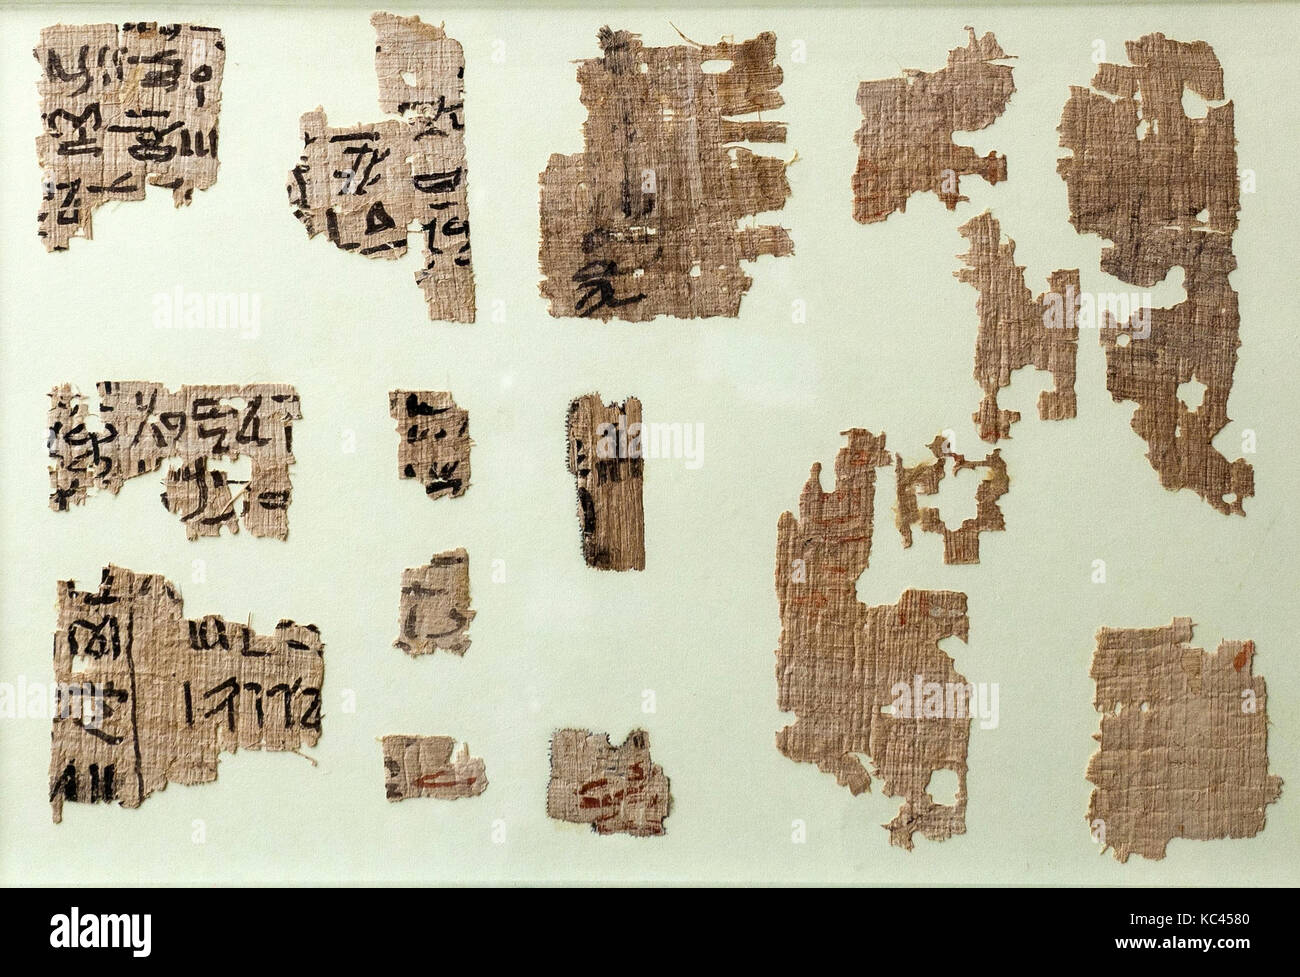 Meketre Papyrus, Reich der Mitte, Dynastie 12, Ca. 1981 - 1975 v. Chr., aus Ägypten, Oberägypten, Theben, südlichen Asasif, Grab von Stockfoto